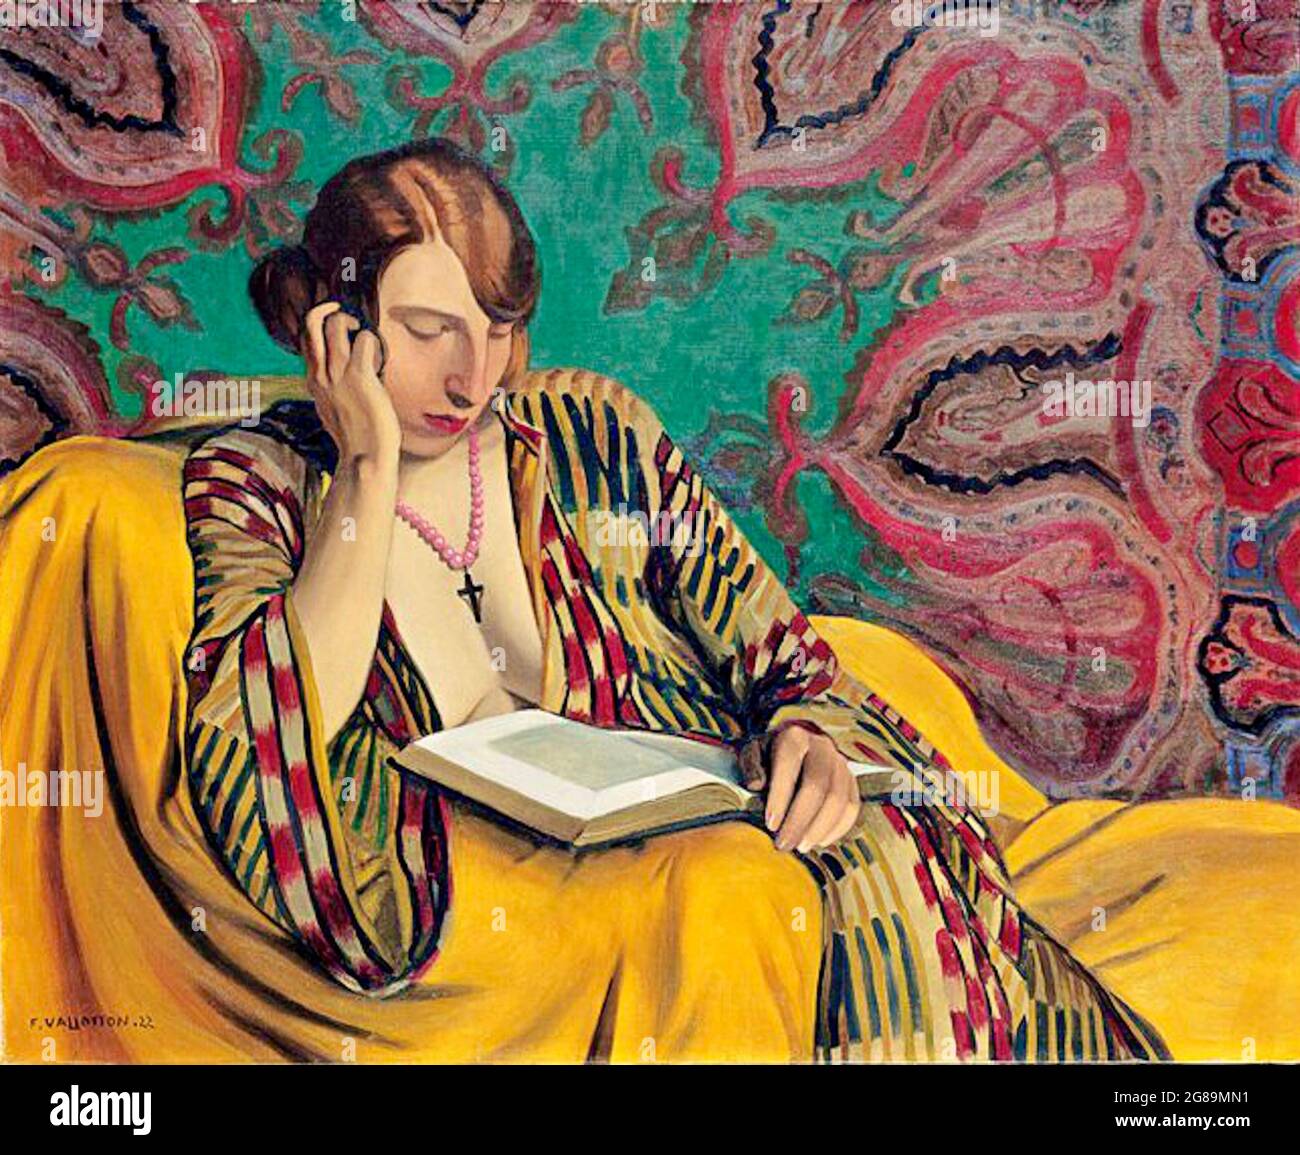 Oeuvre de Félix Vallotton intitulée la Liseuse ou lampe de lecture. Une femme assise lit un livre. Le papier peint de style mandala orné orne les murs. Banque D'Images